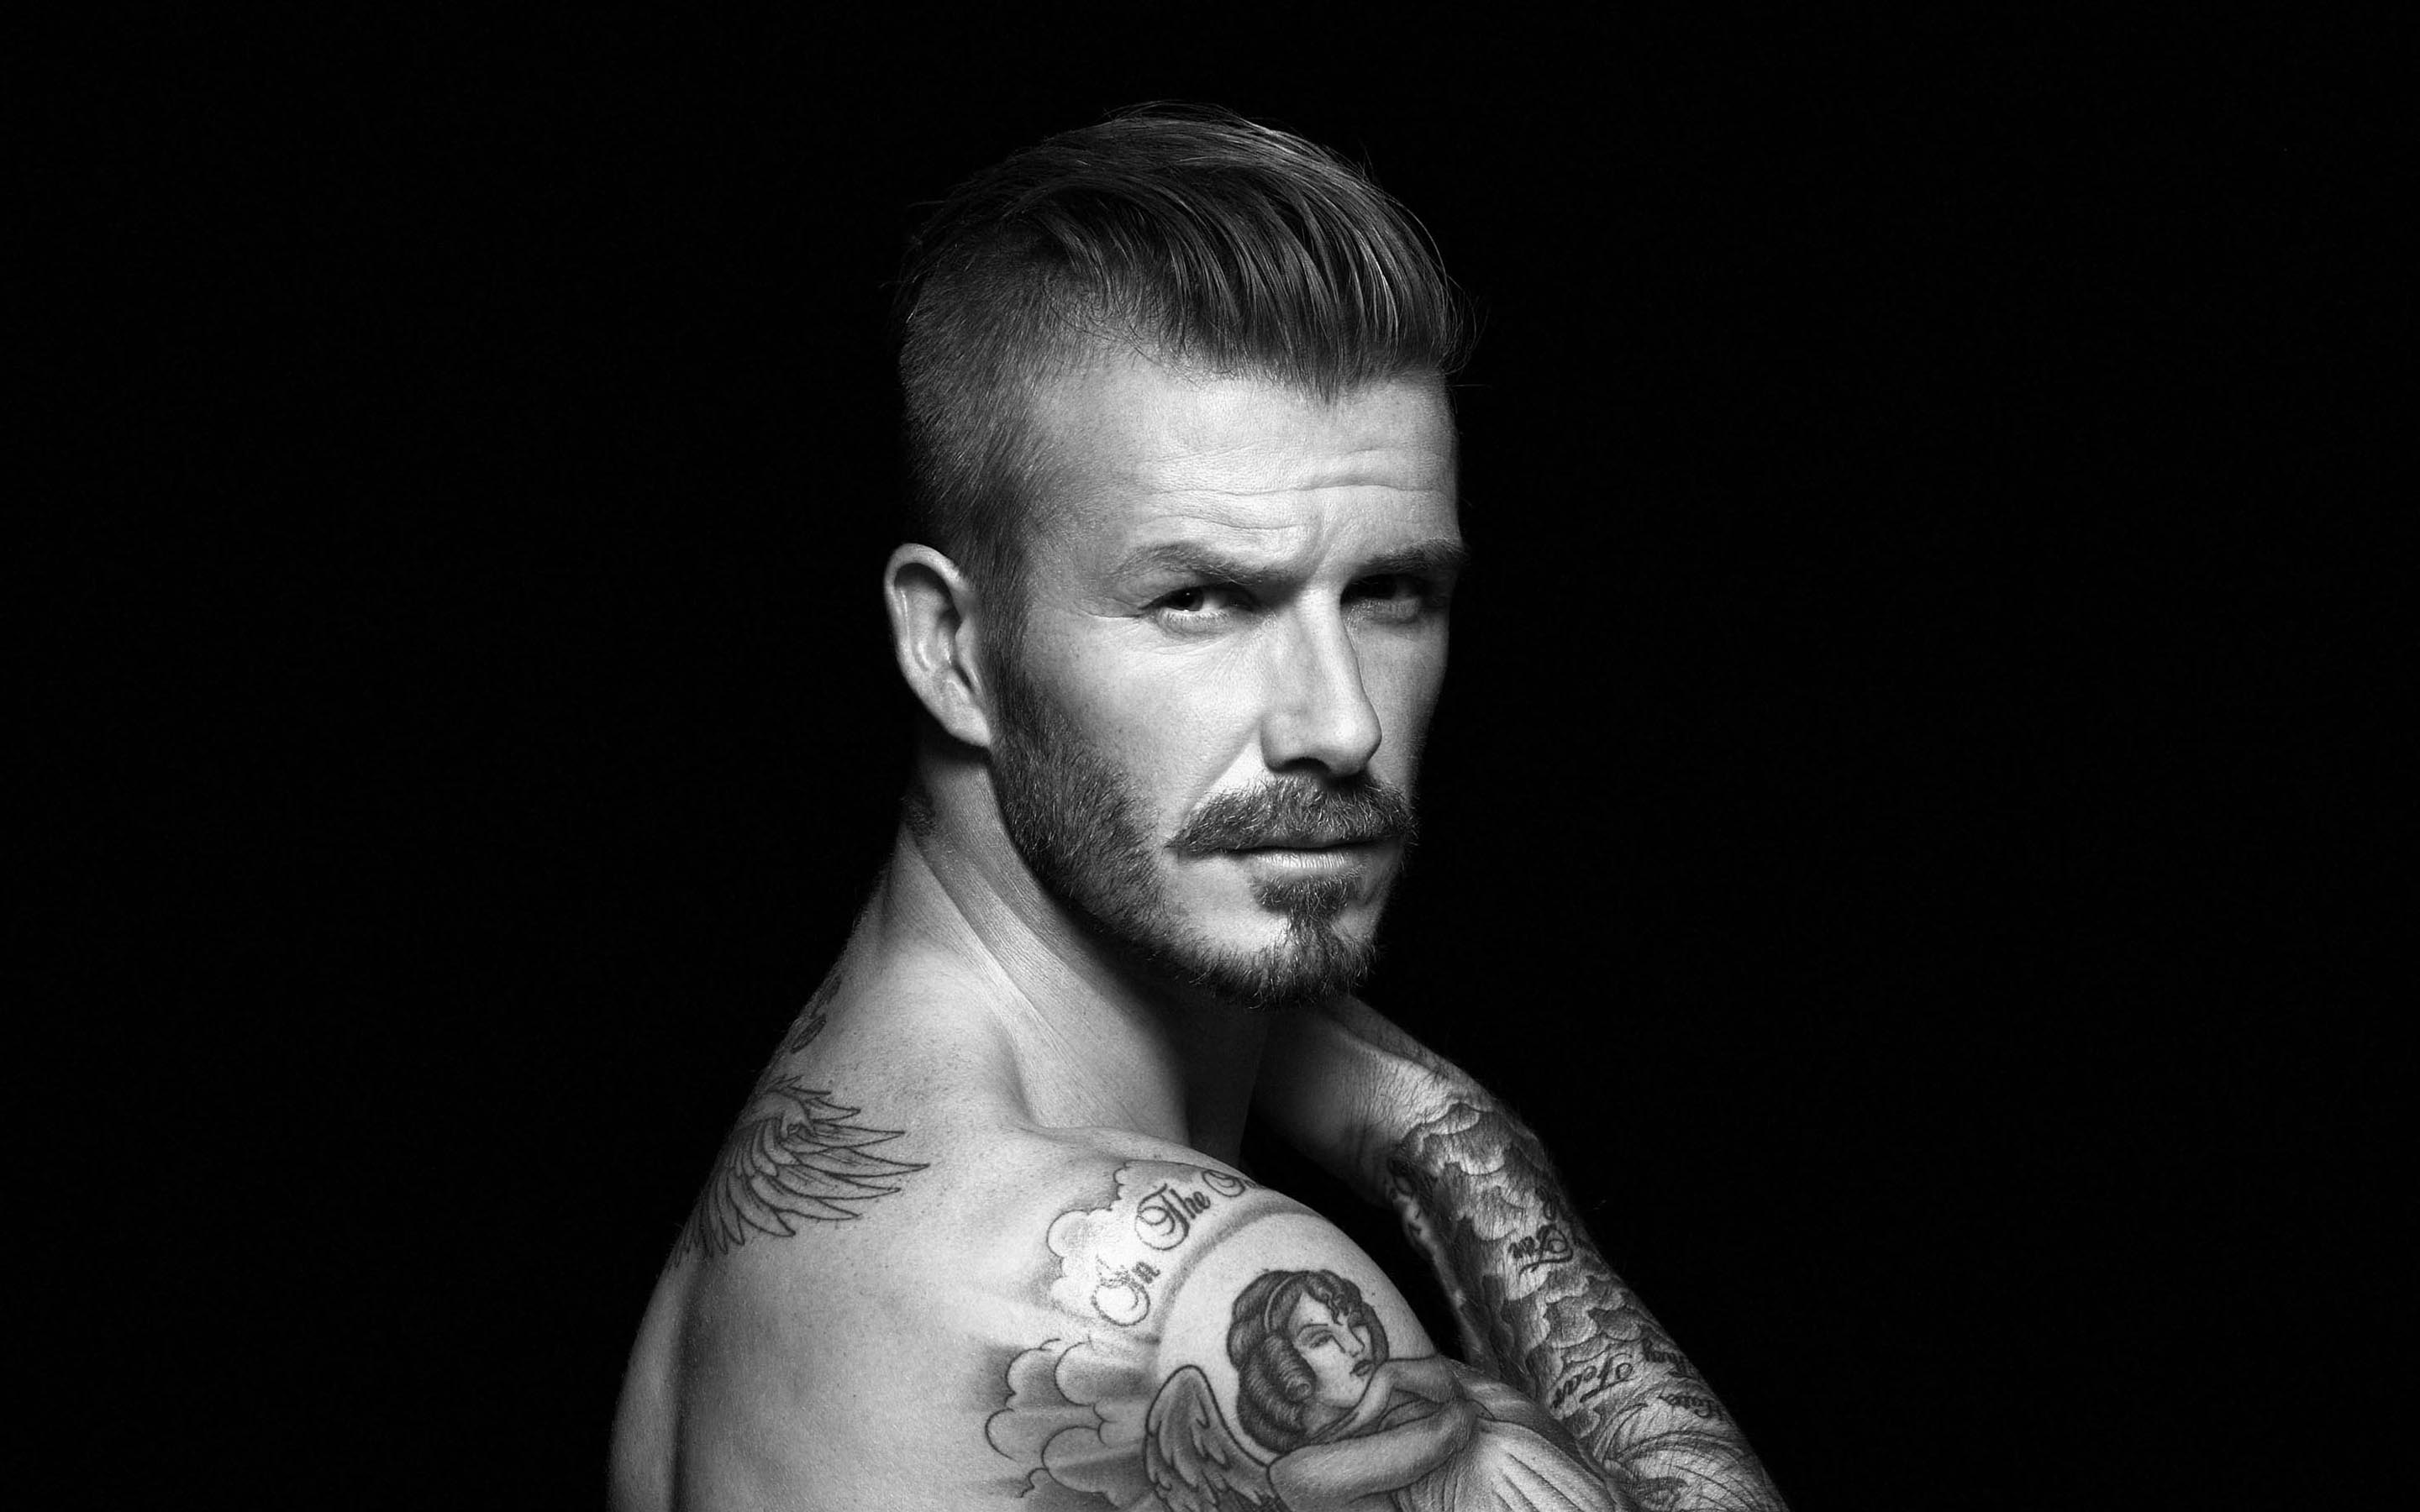 Wallpaper Of David Beckham